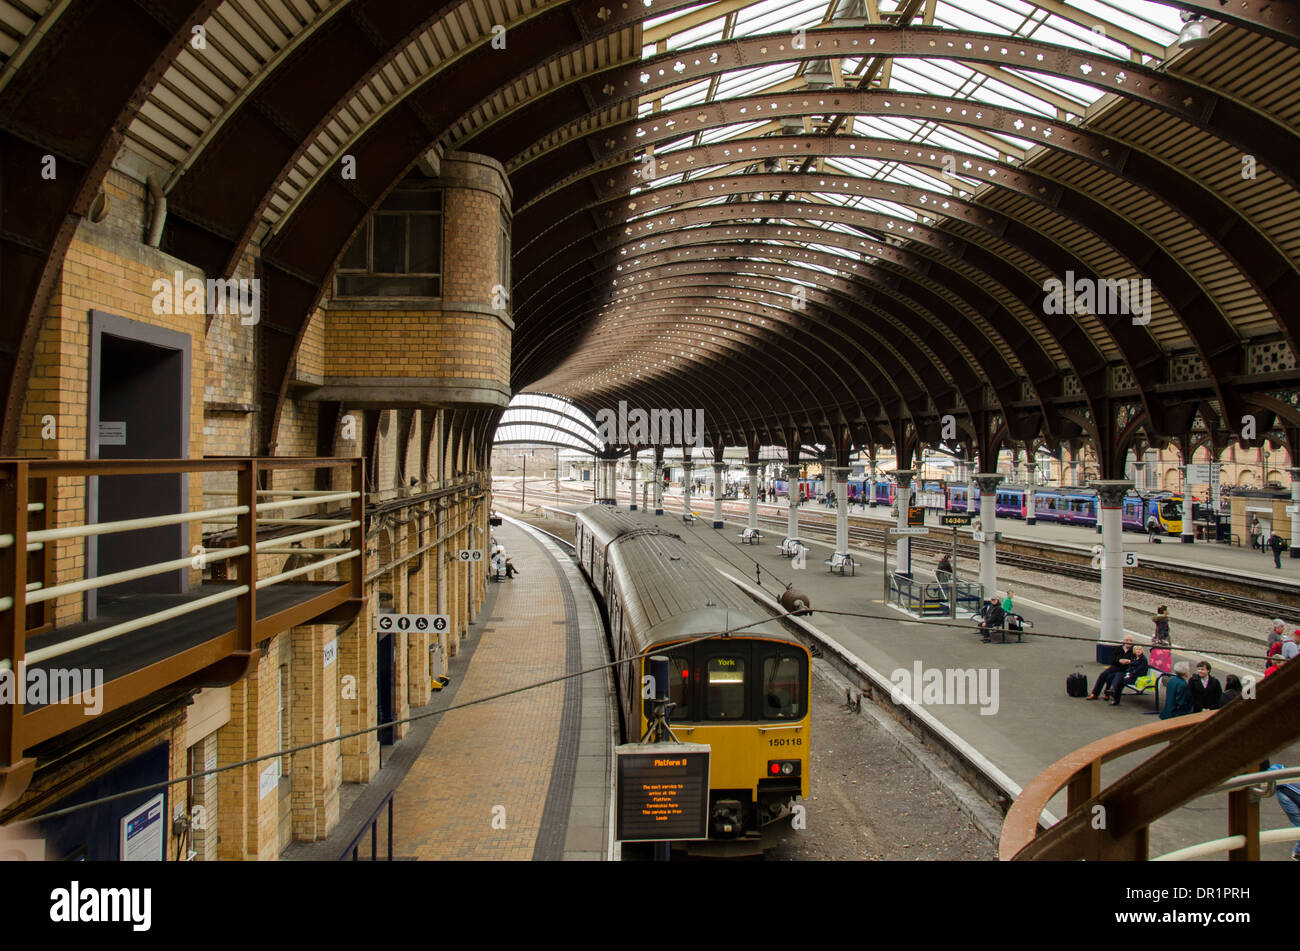 Vista interior de trainshed con hierro y techo de cristal fijo, trenes y gente esperando en la estación de tren de platfom - York, North Yorkshire, Inglaterra, Reino Unido. Foto de stock